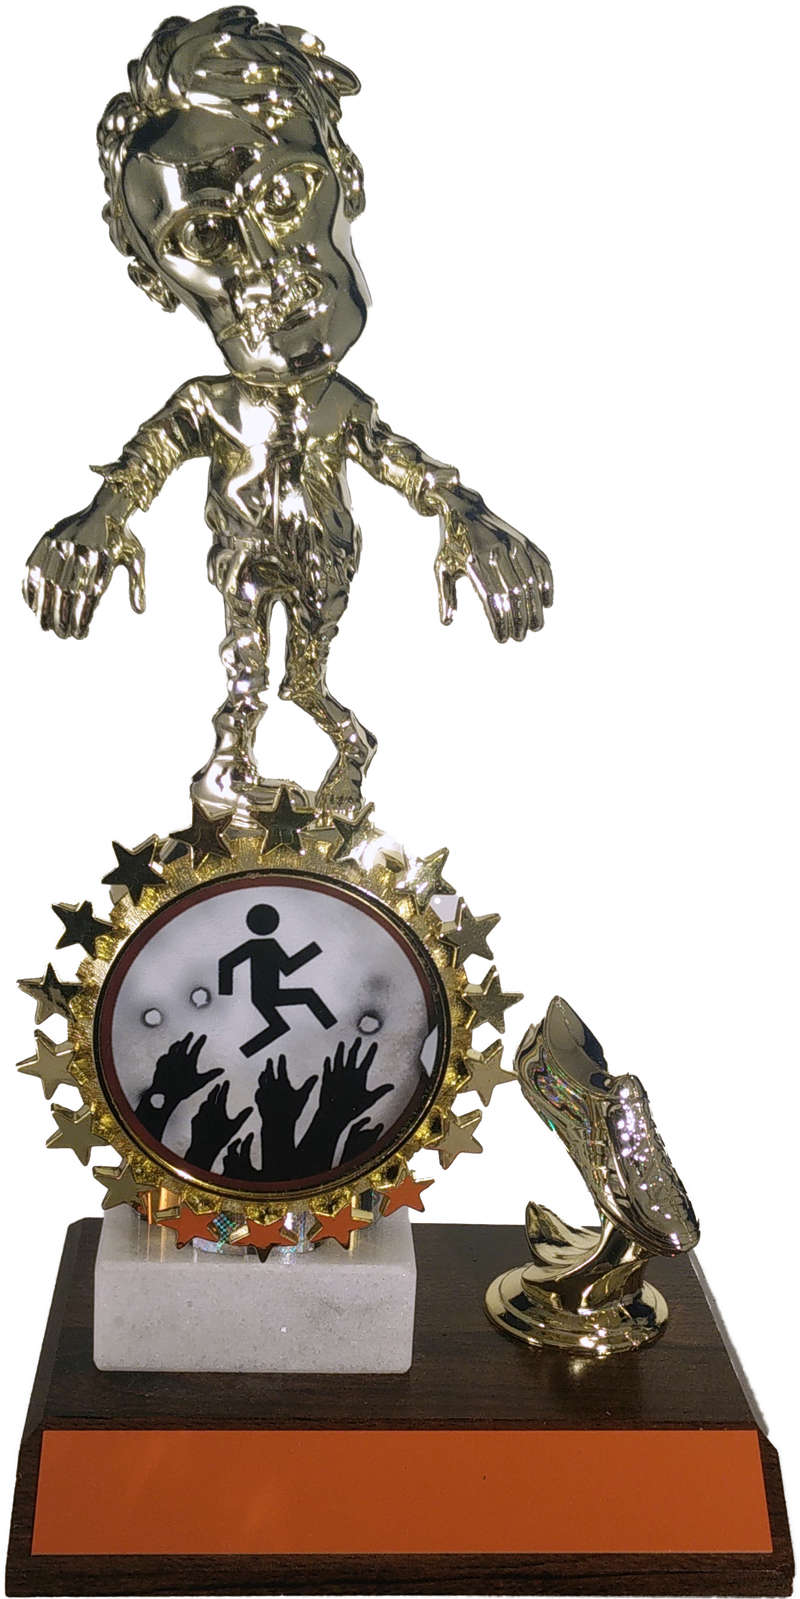 Walking Zombie Halloween Logo Trophy With Foot On Wood-Trophy-Schoppy&